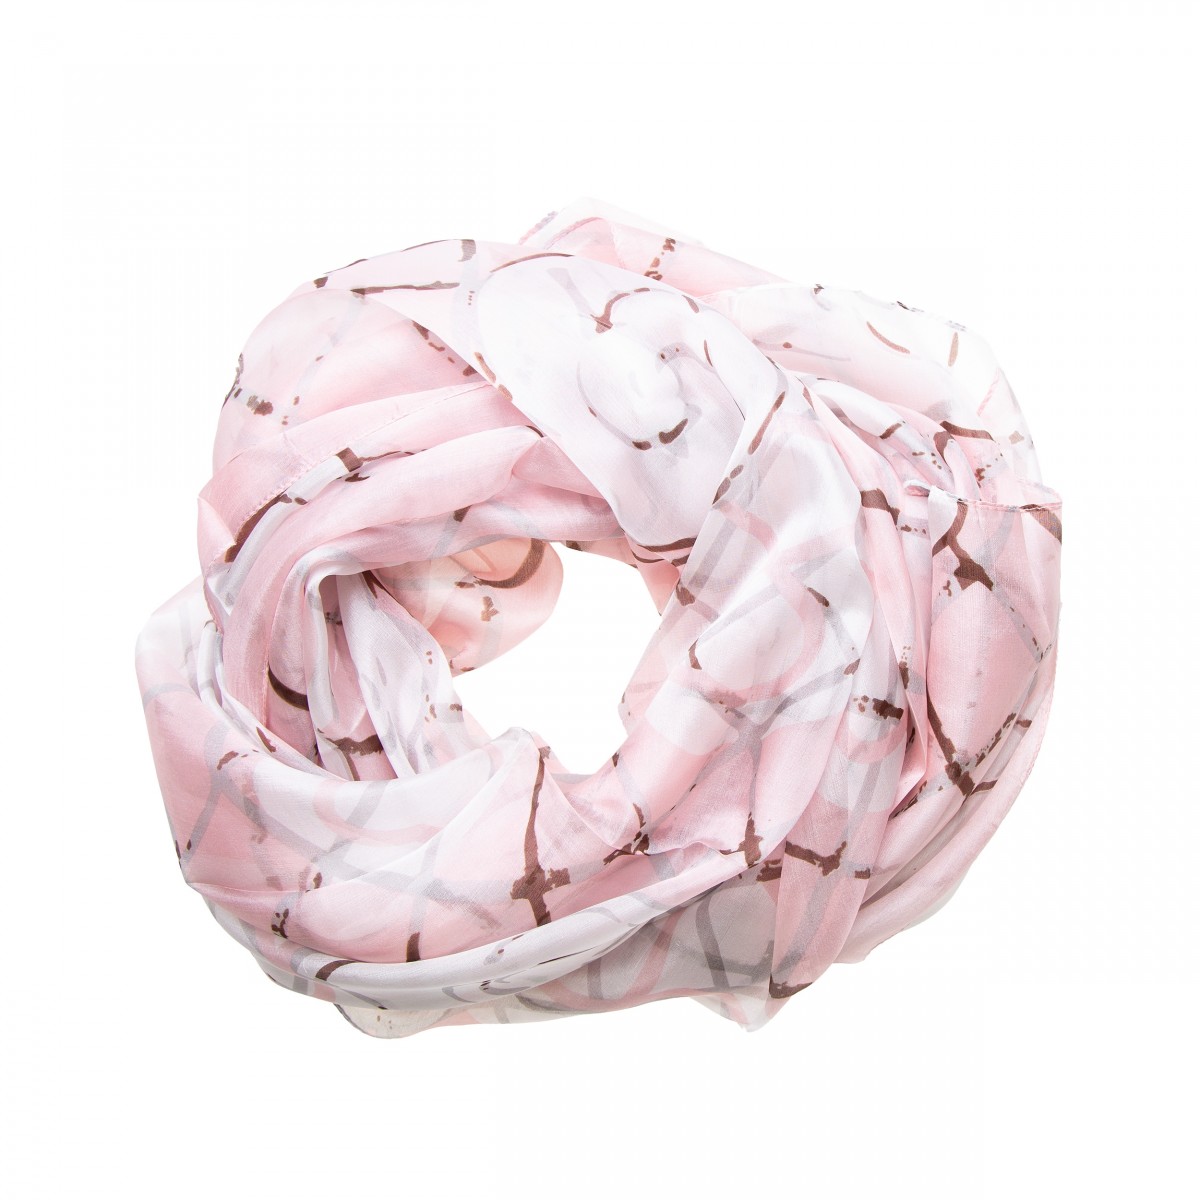 Seidenschal Halstuch Schal Chiffon weiß rosa 180x110cm - Tinitex